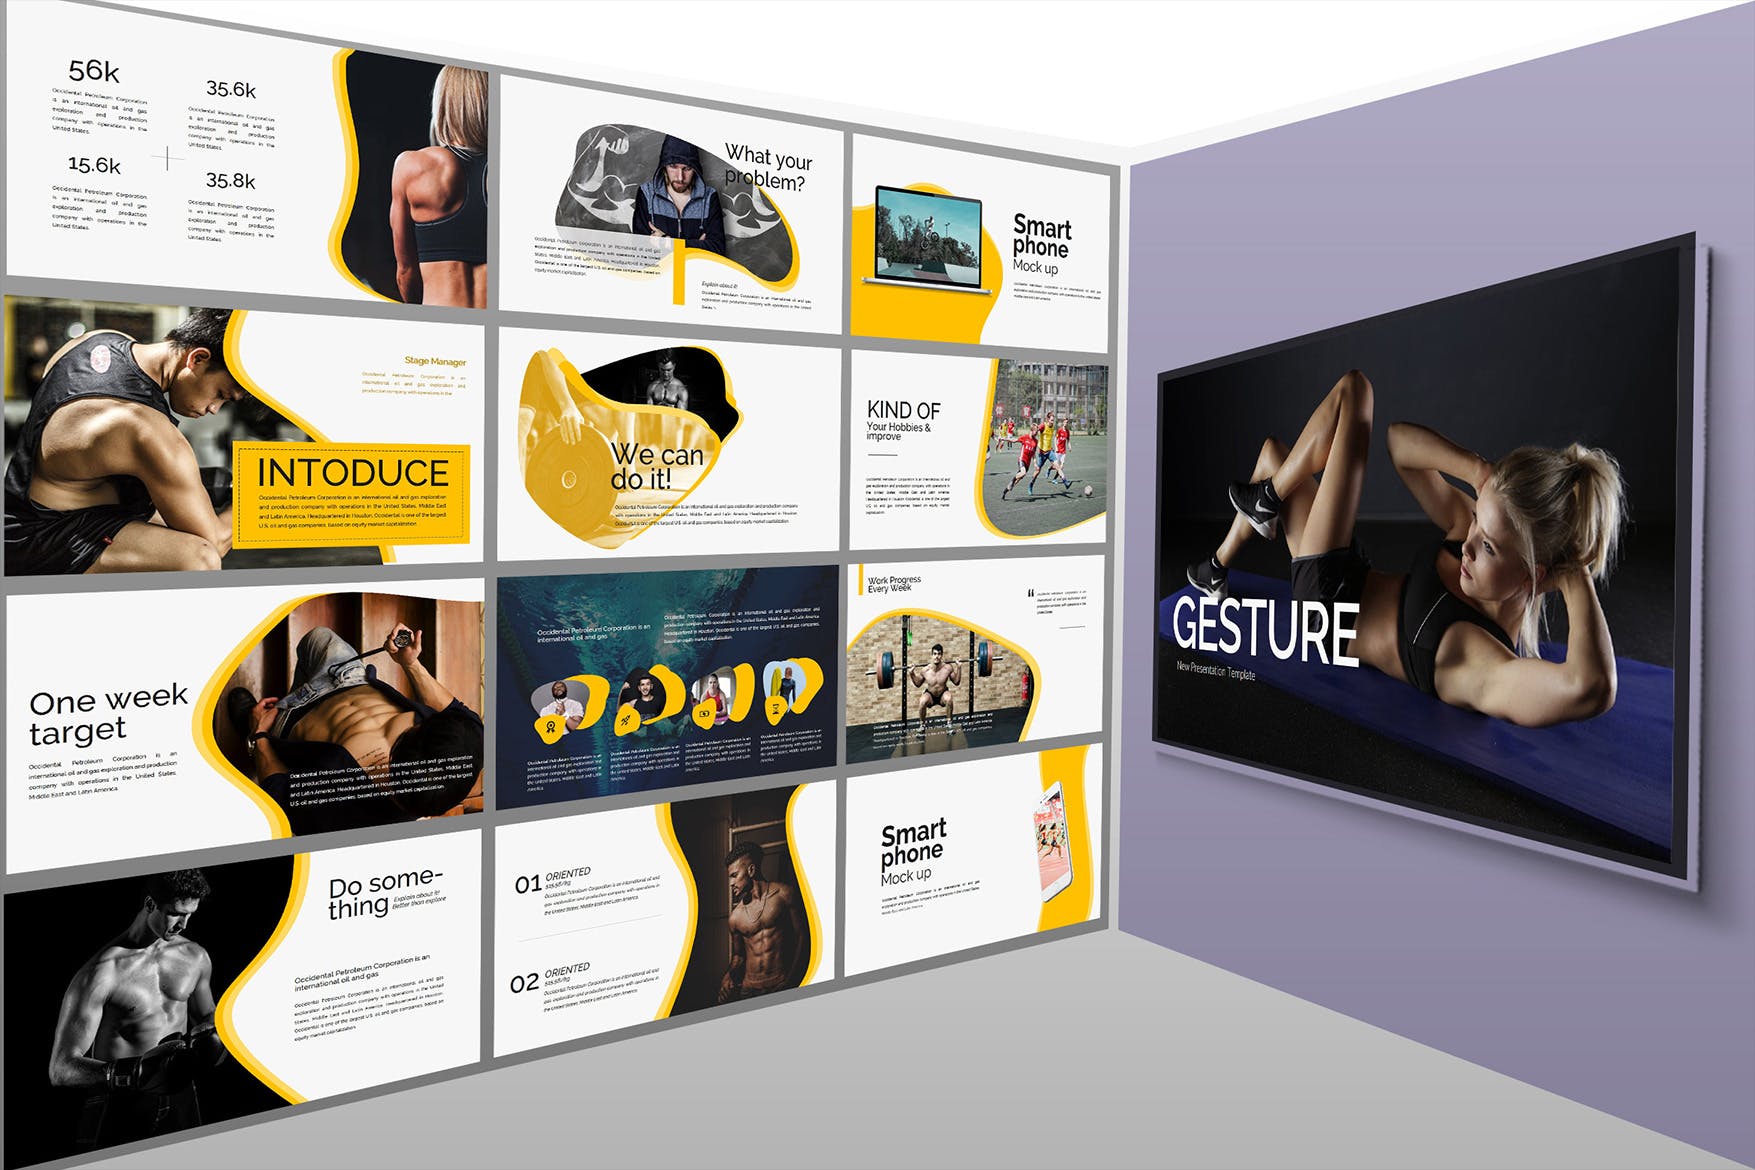 健身计划/健身俱乐部主题PPT幻灯片模板 Gesture Athletics Powerpoint Template插图(1)